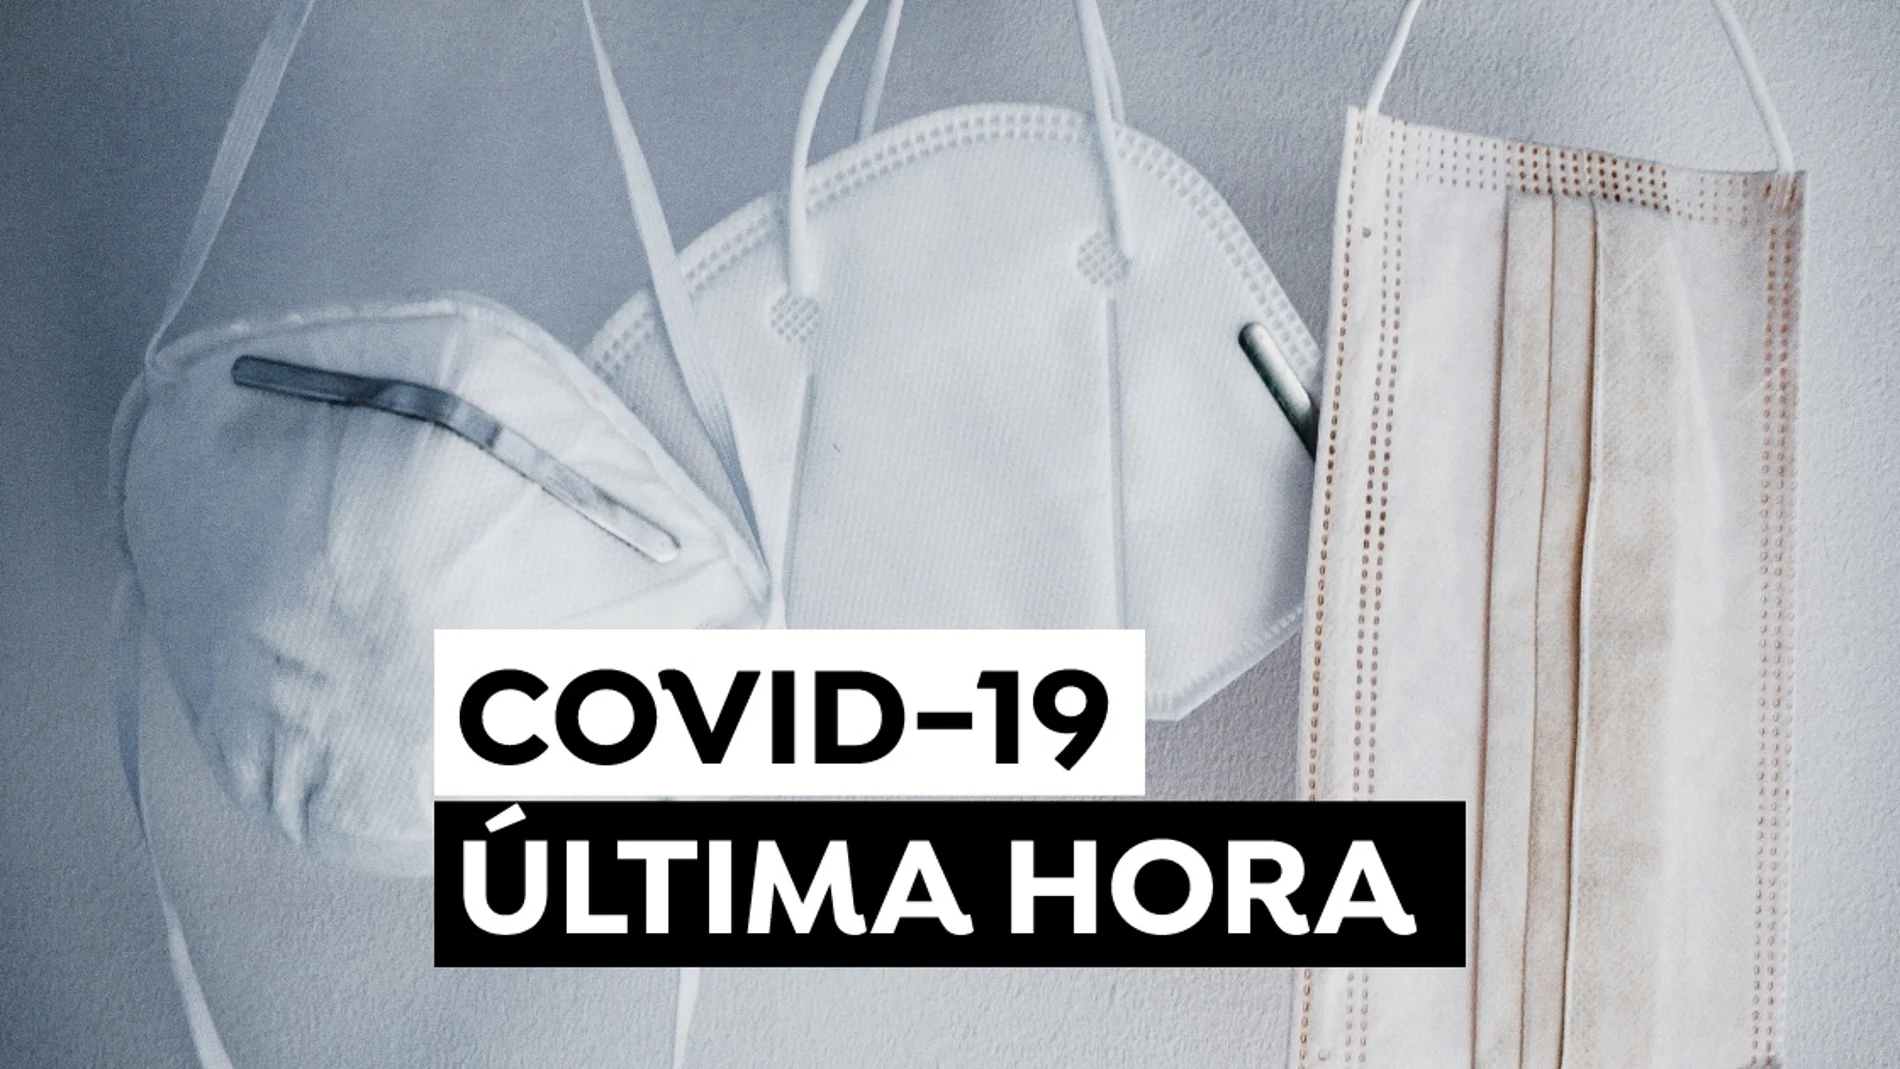 Coronavirus España hoy: Nuevas restricciones y última hora del COVID-19